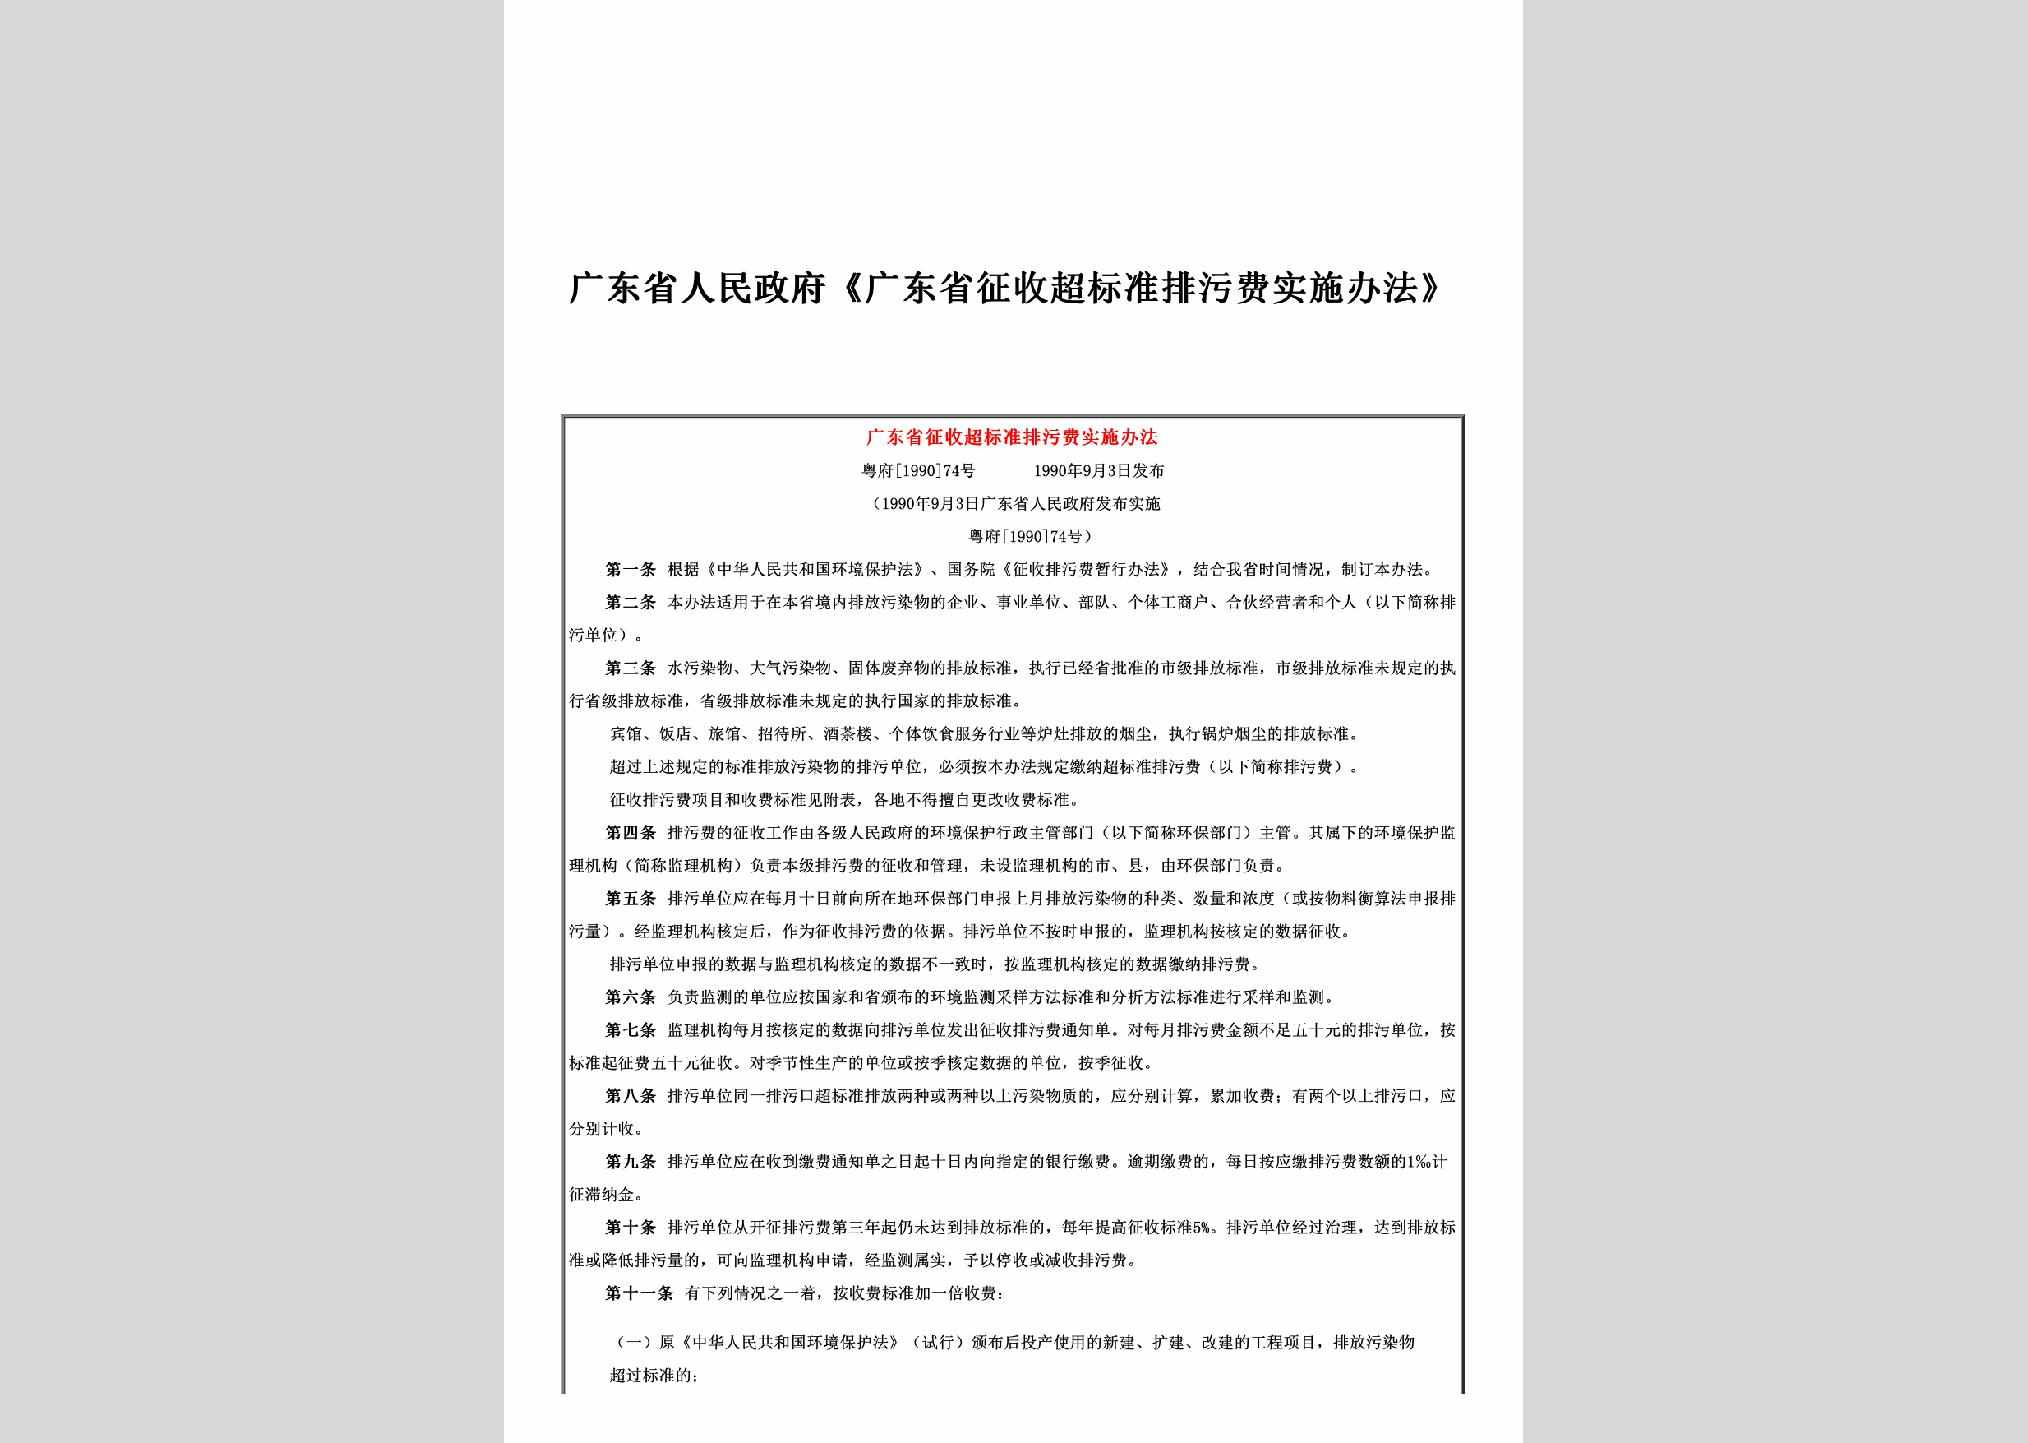 粤府[1990]74号：《广东省征收超标准排污费实施办法》